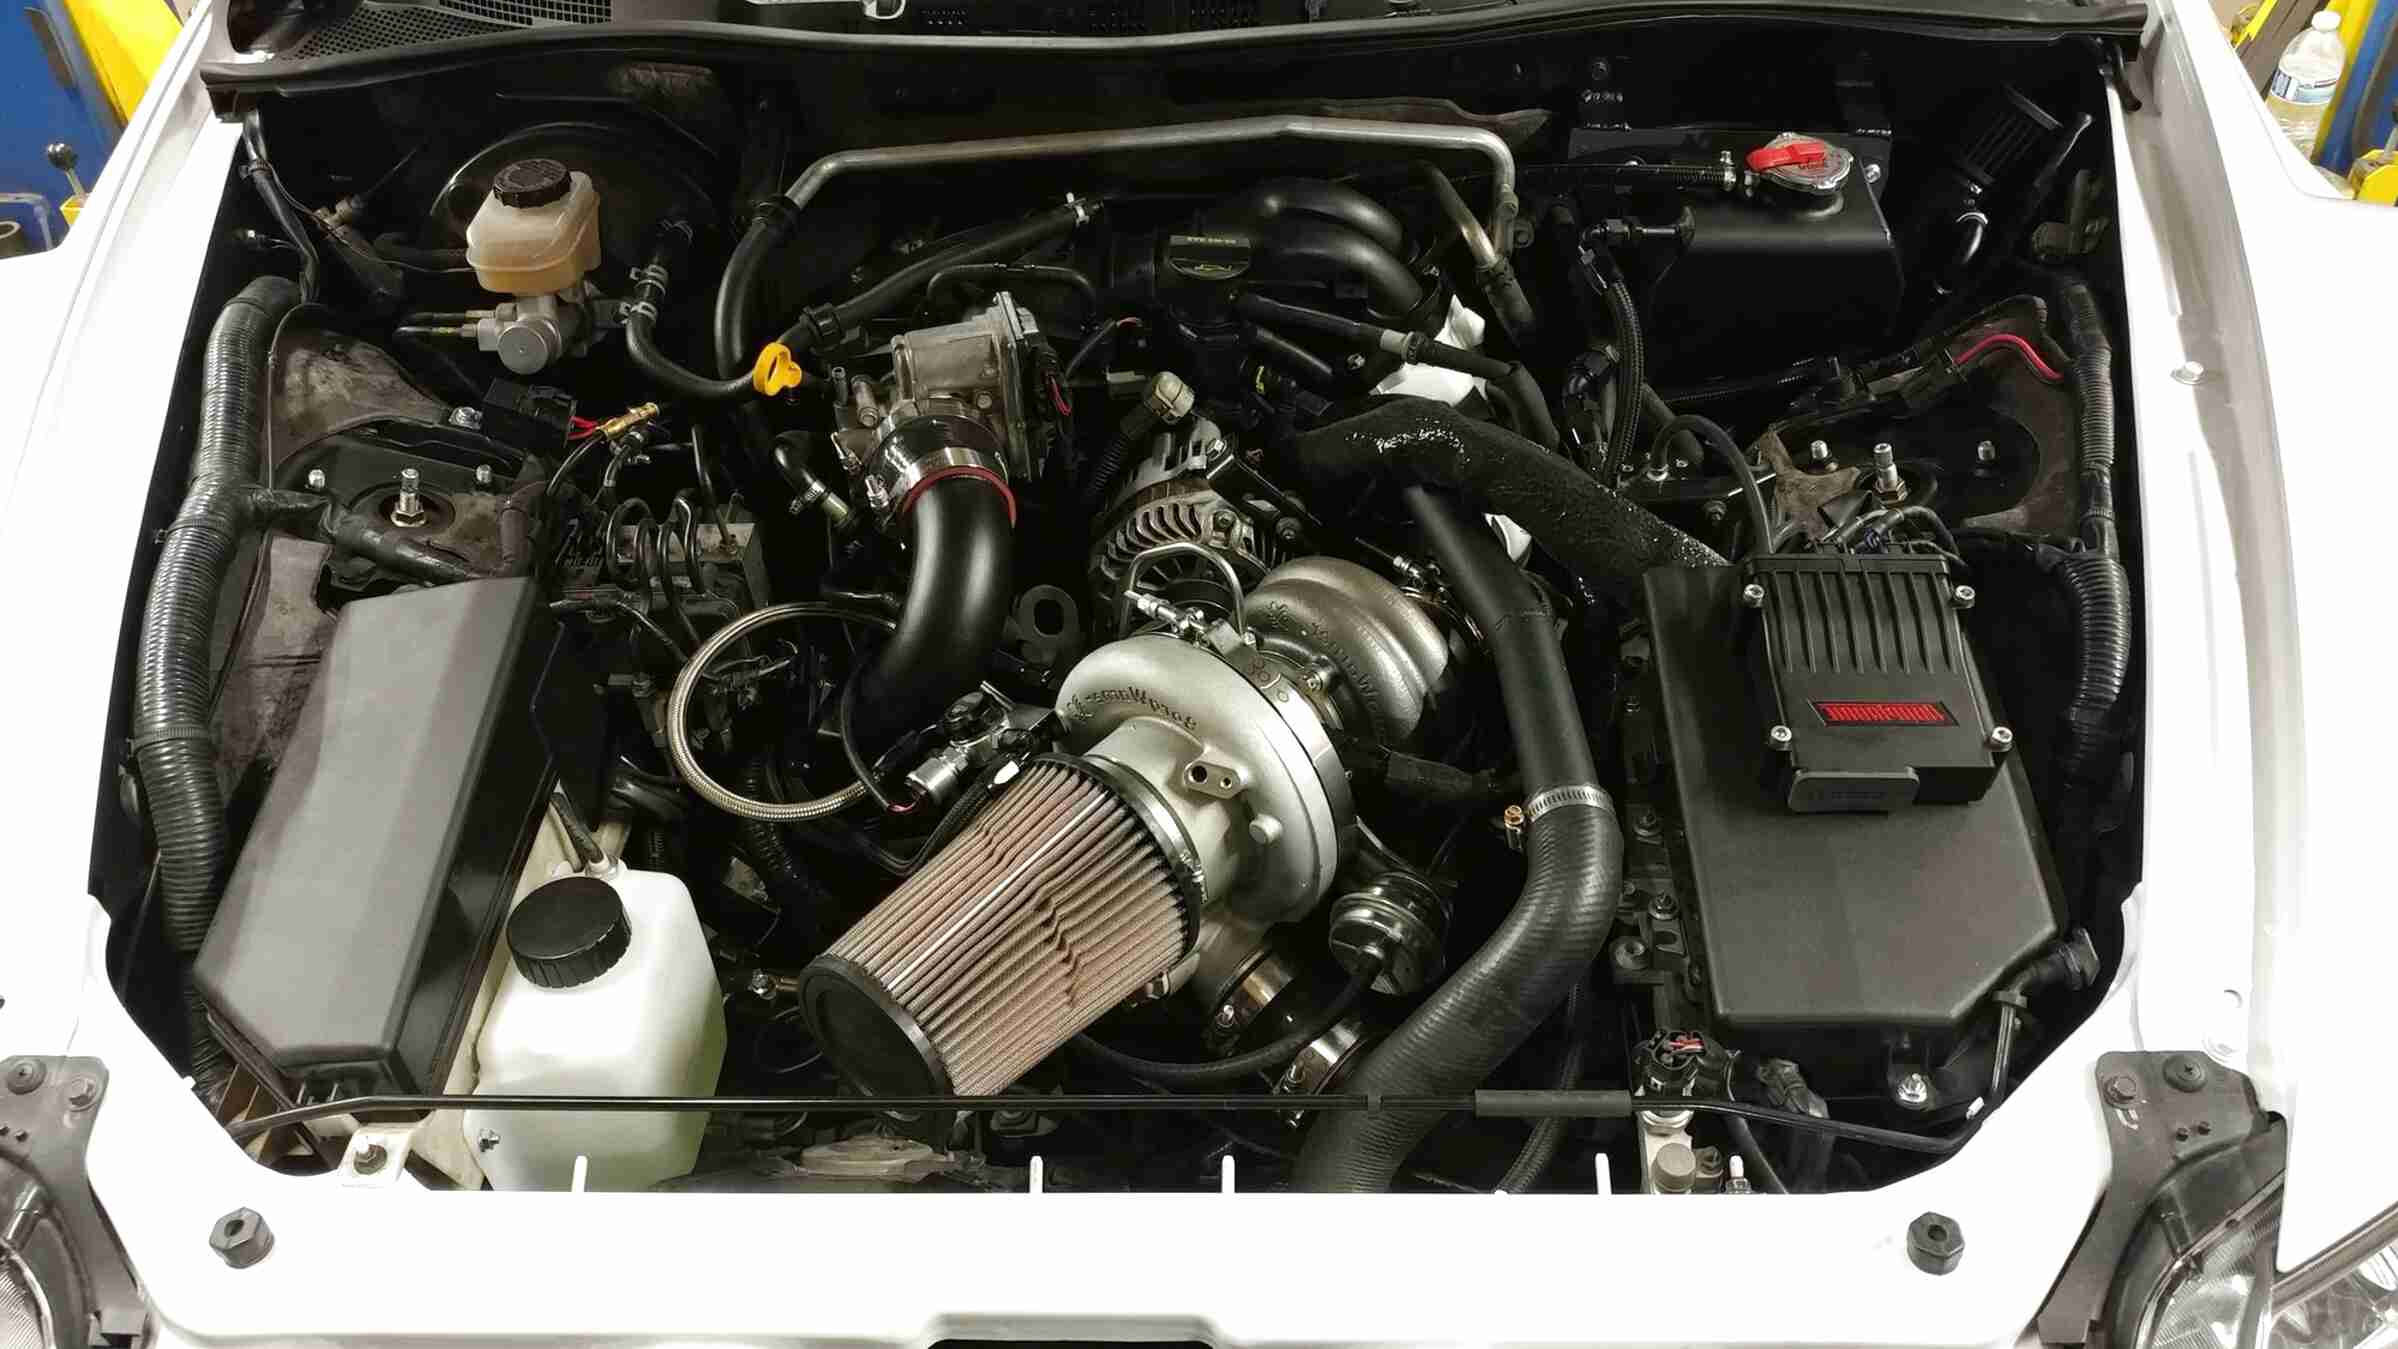 Mazda Rx8 Turbo Kit for sale in UK | 60 used Mazda Rx8 Turbo Kits